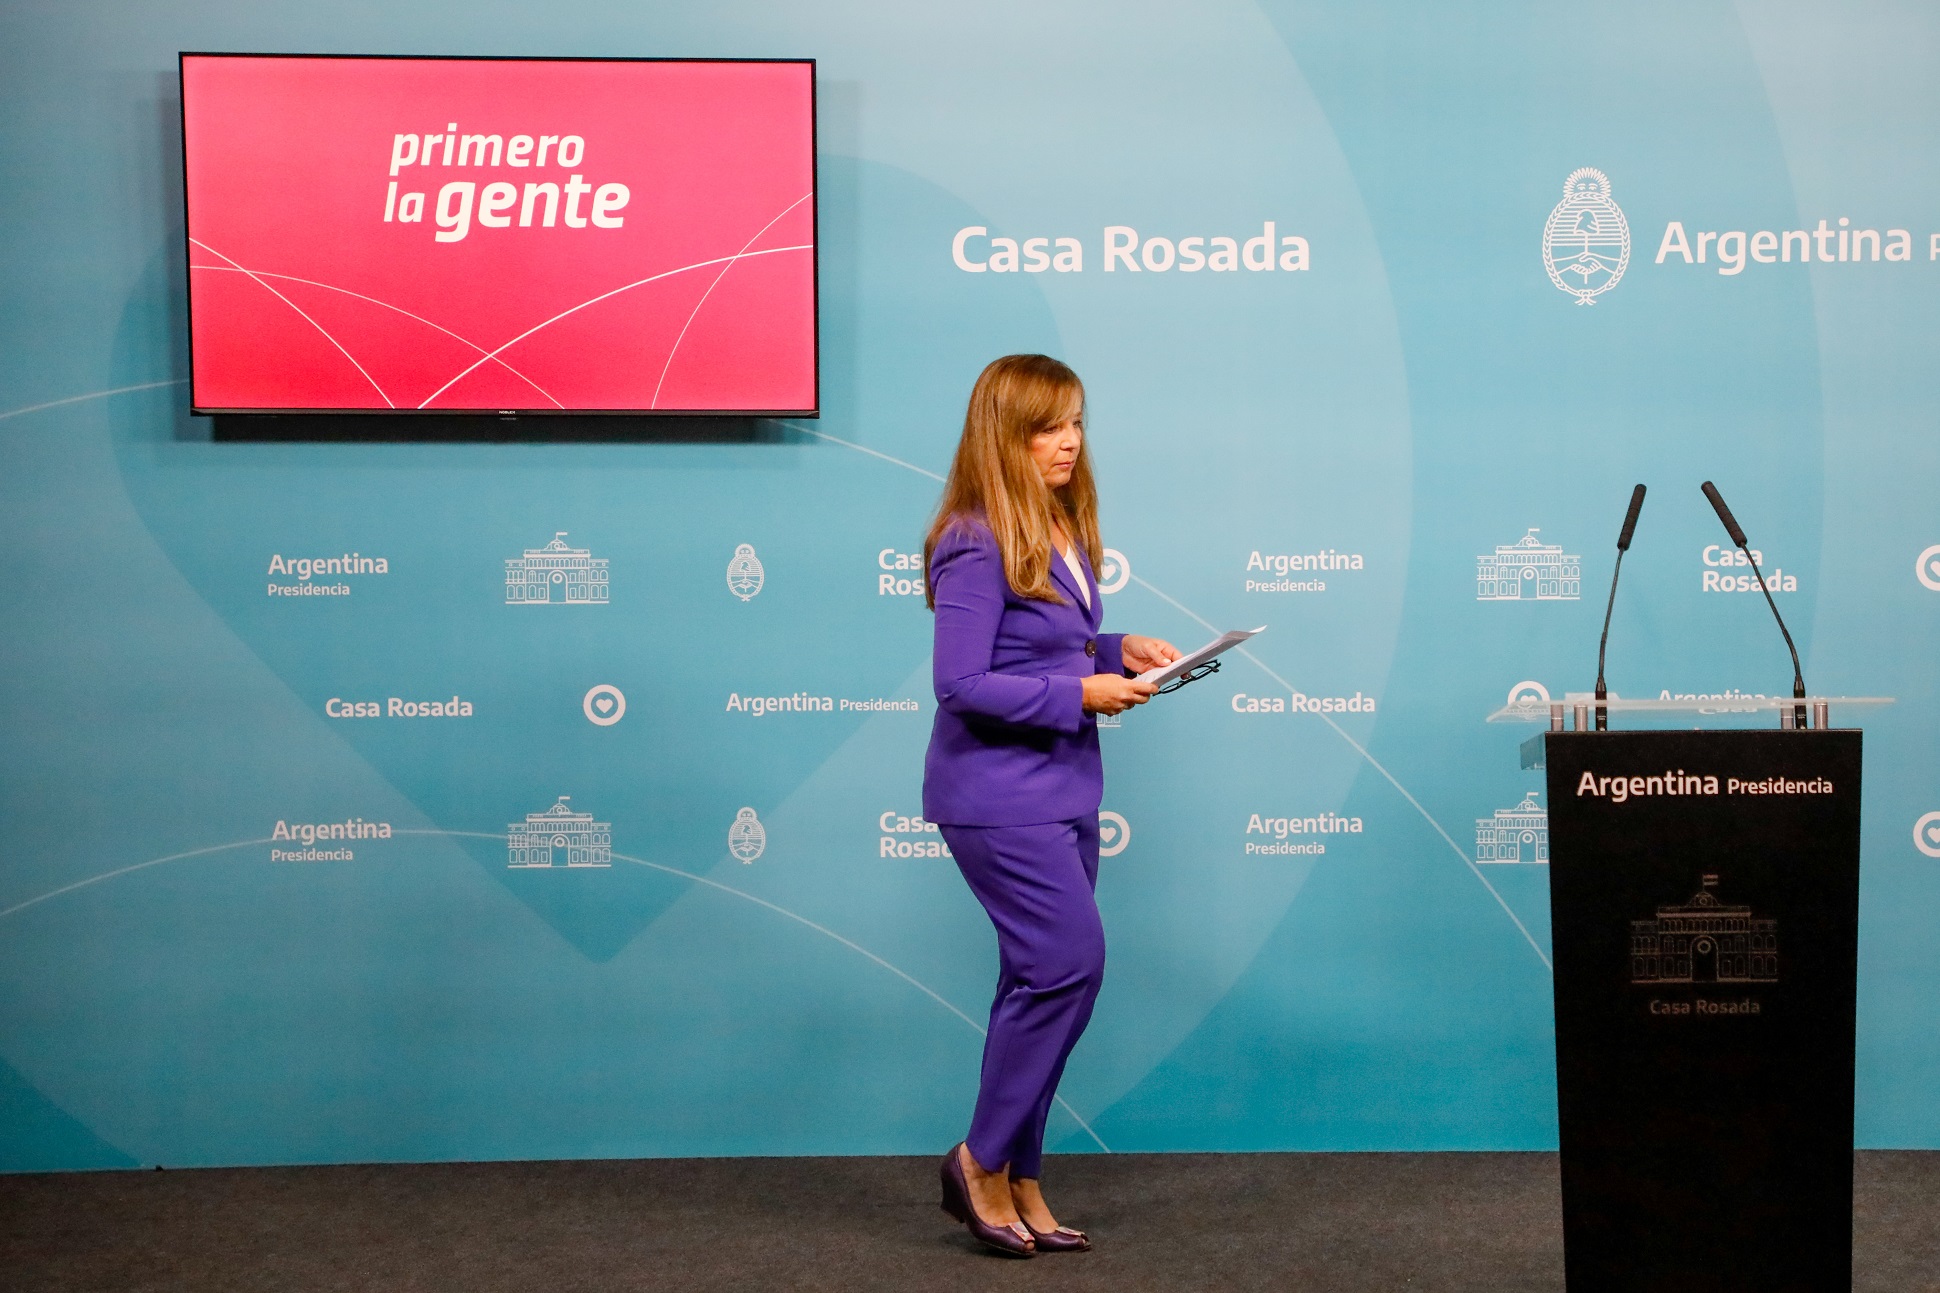 Gabriela Cerruti : El presidente Alberto Fernández entiende que tenemos que construir una Argentina donde profundicemos los acuerdos democráticos”